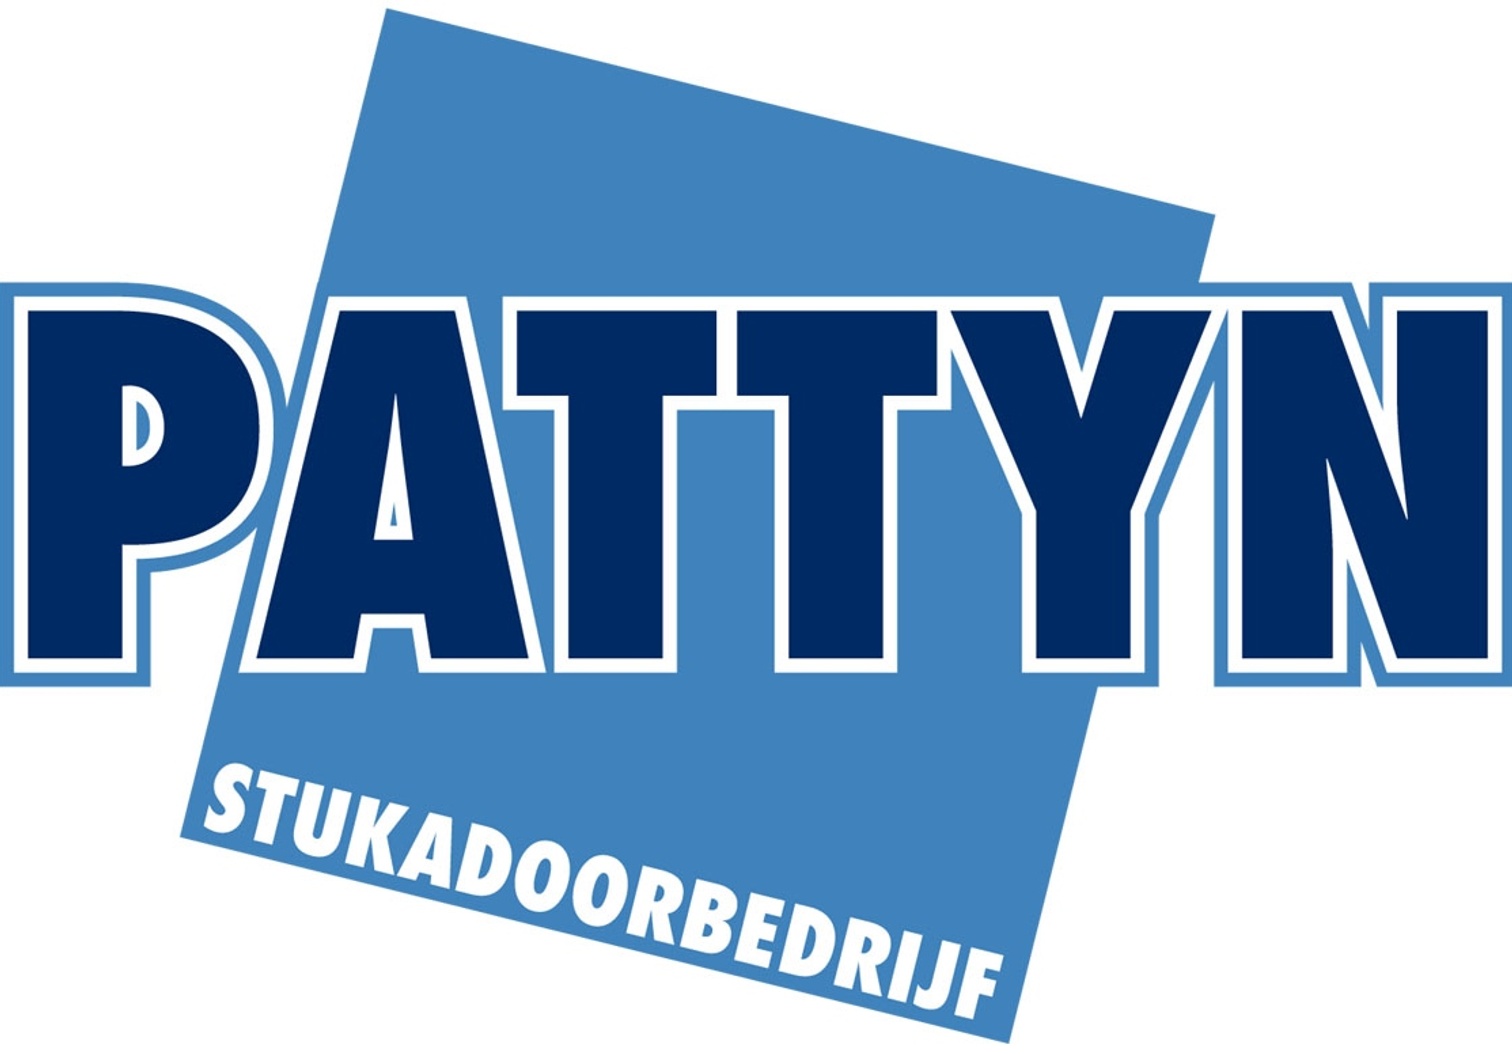 Stukadoorbedrijf-pattyn.be logo